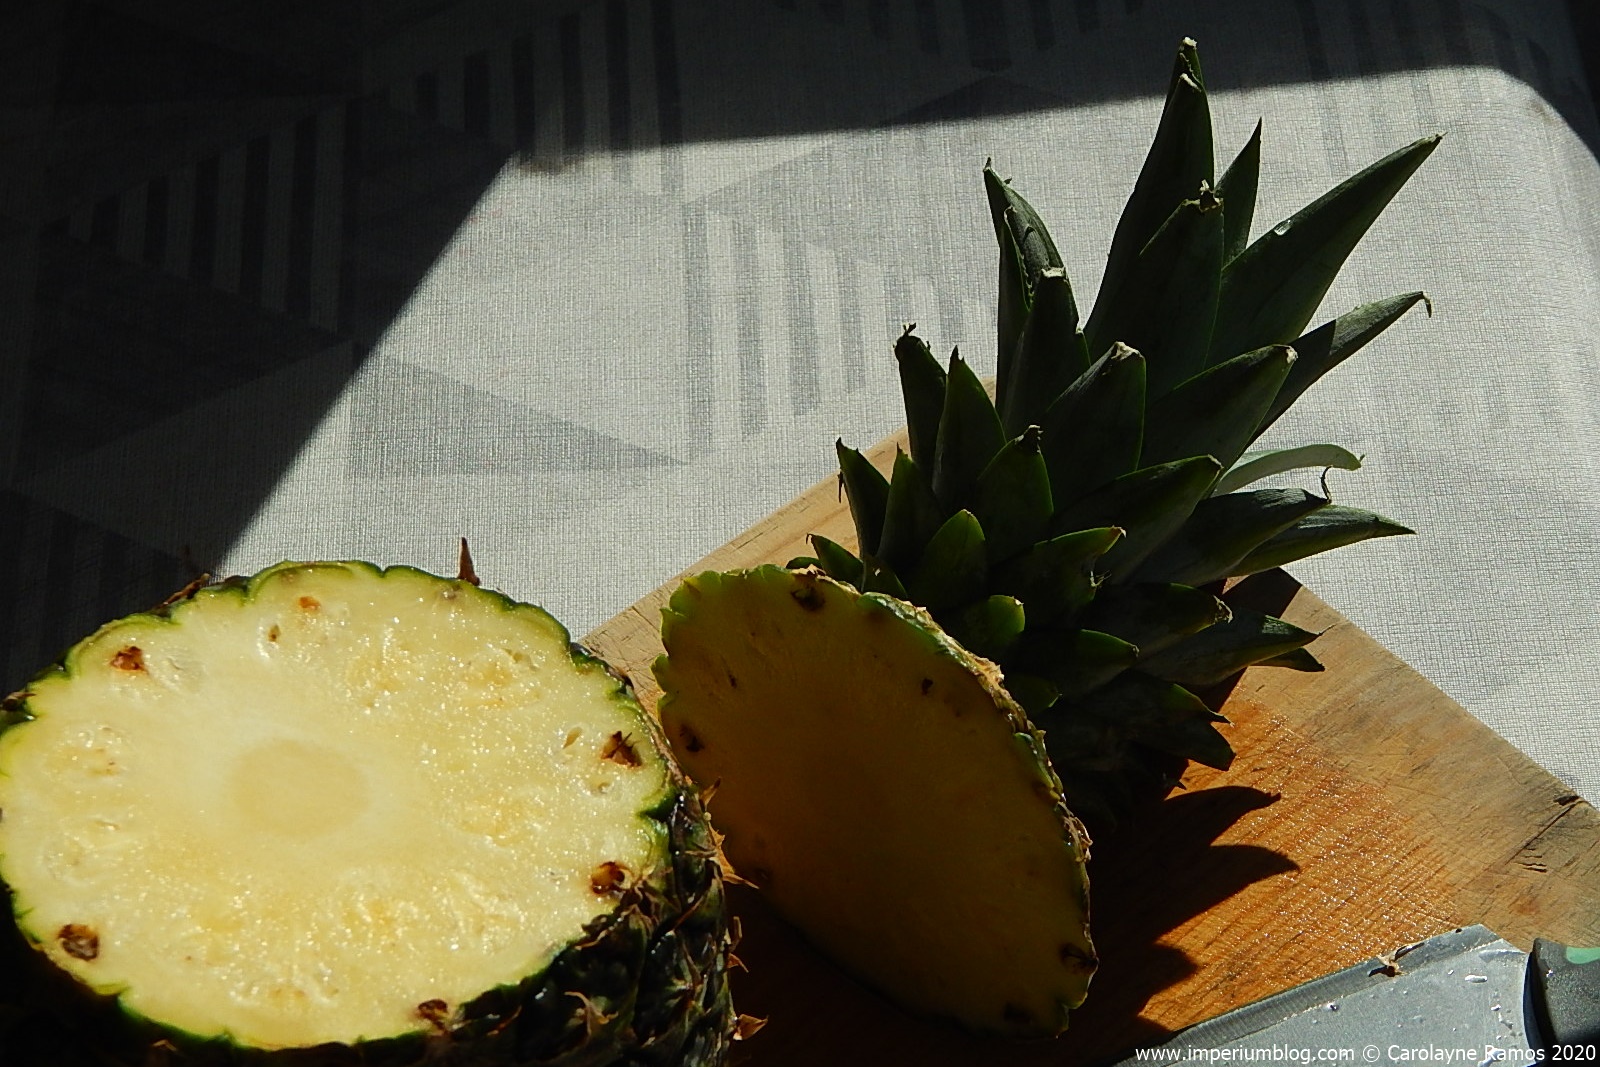 registo de um abacaxi, cortado pelo topo. evidente, o seu interior amarelo, iluminado pela luz solar.